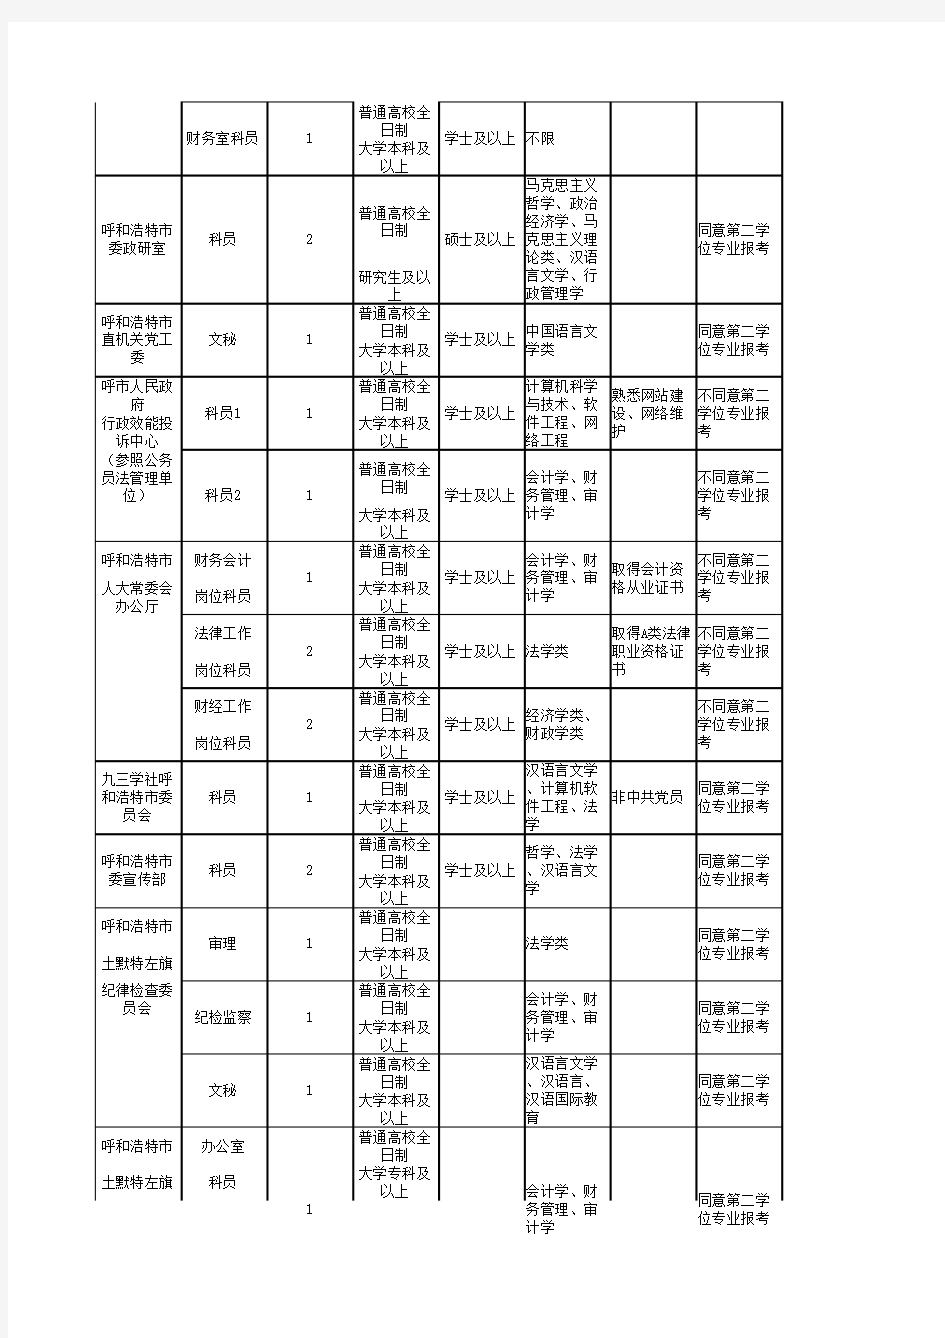 2015年内蒙古自治区党群机关和参照公务员法管理单位考试录用公务员和工作人员职位表